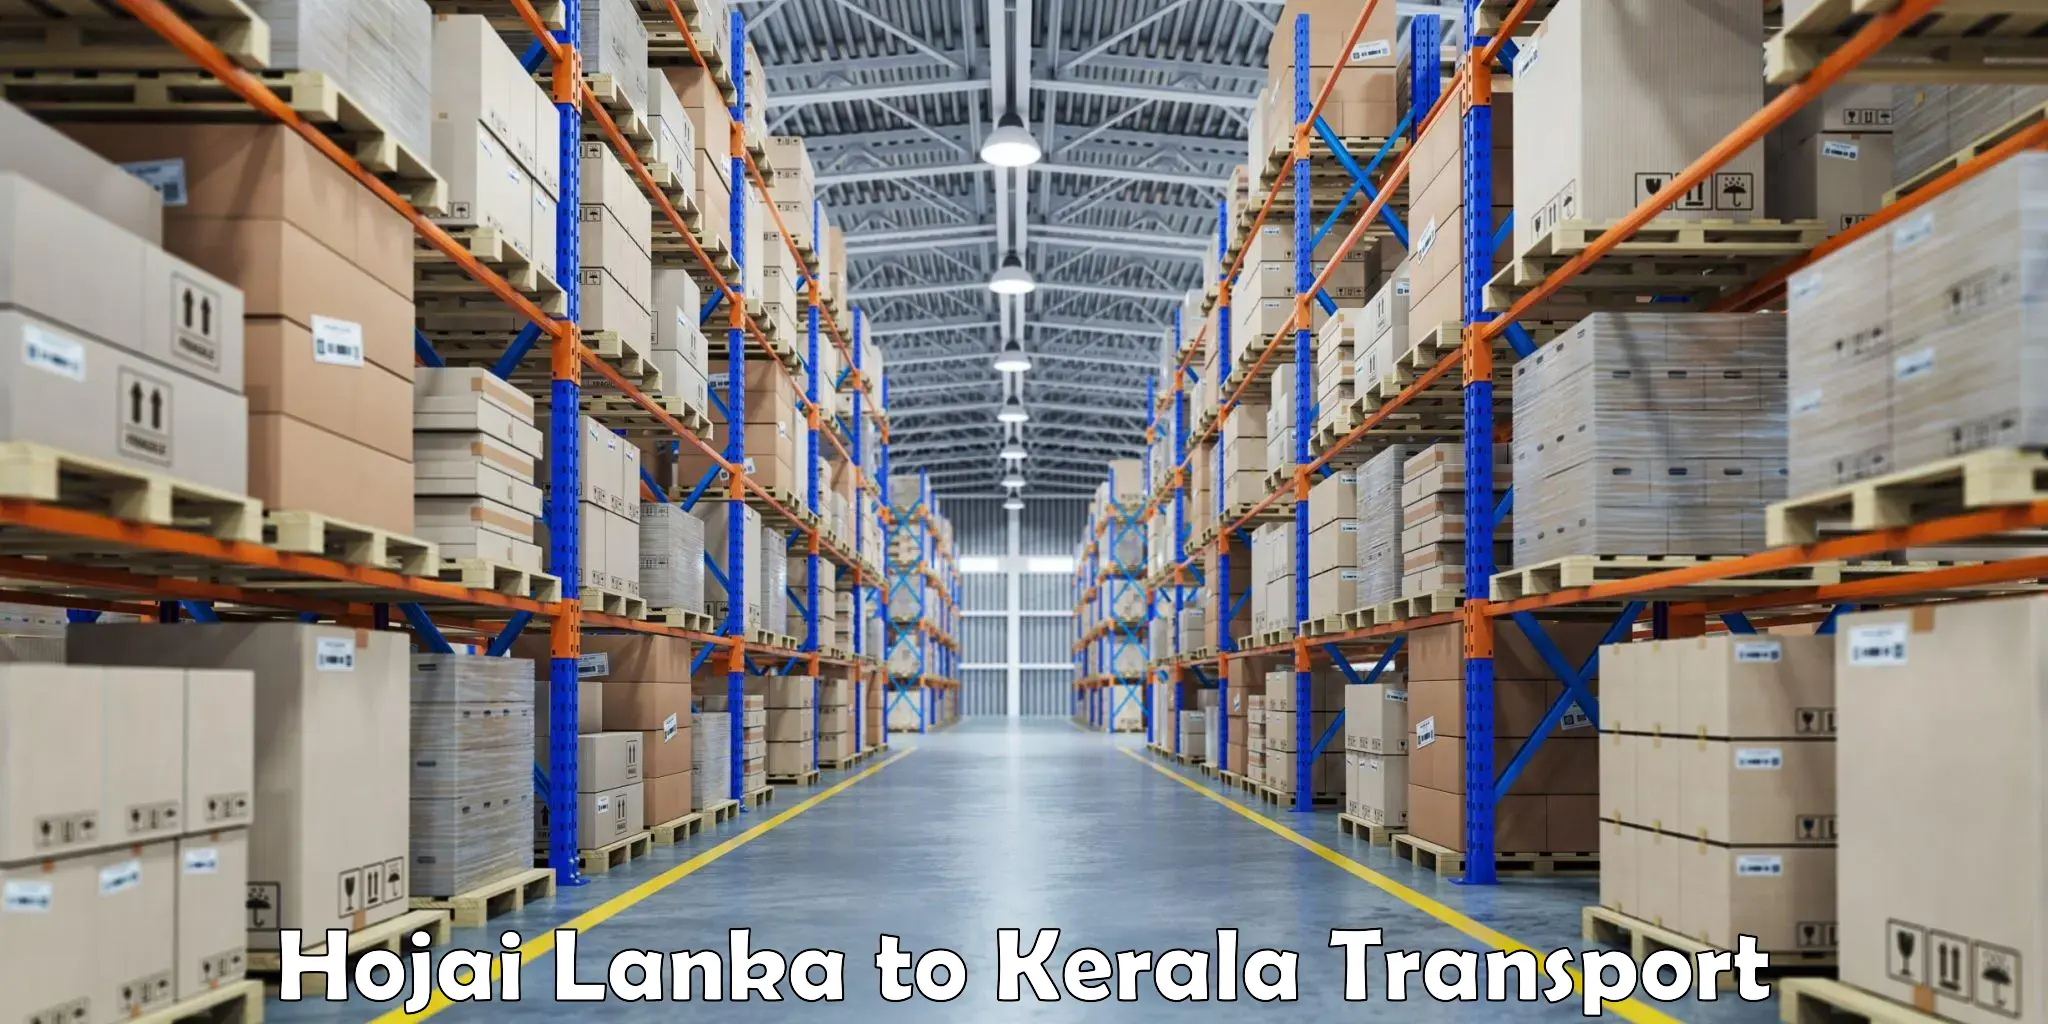 Nearby transport service Hojai Lanka to IIIT Kottayam